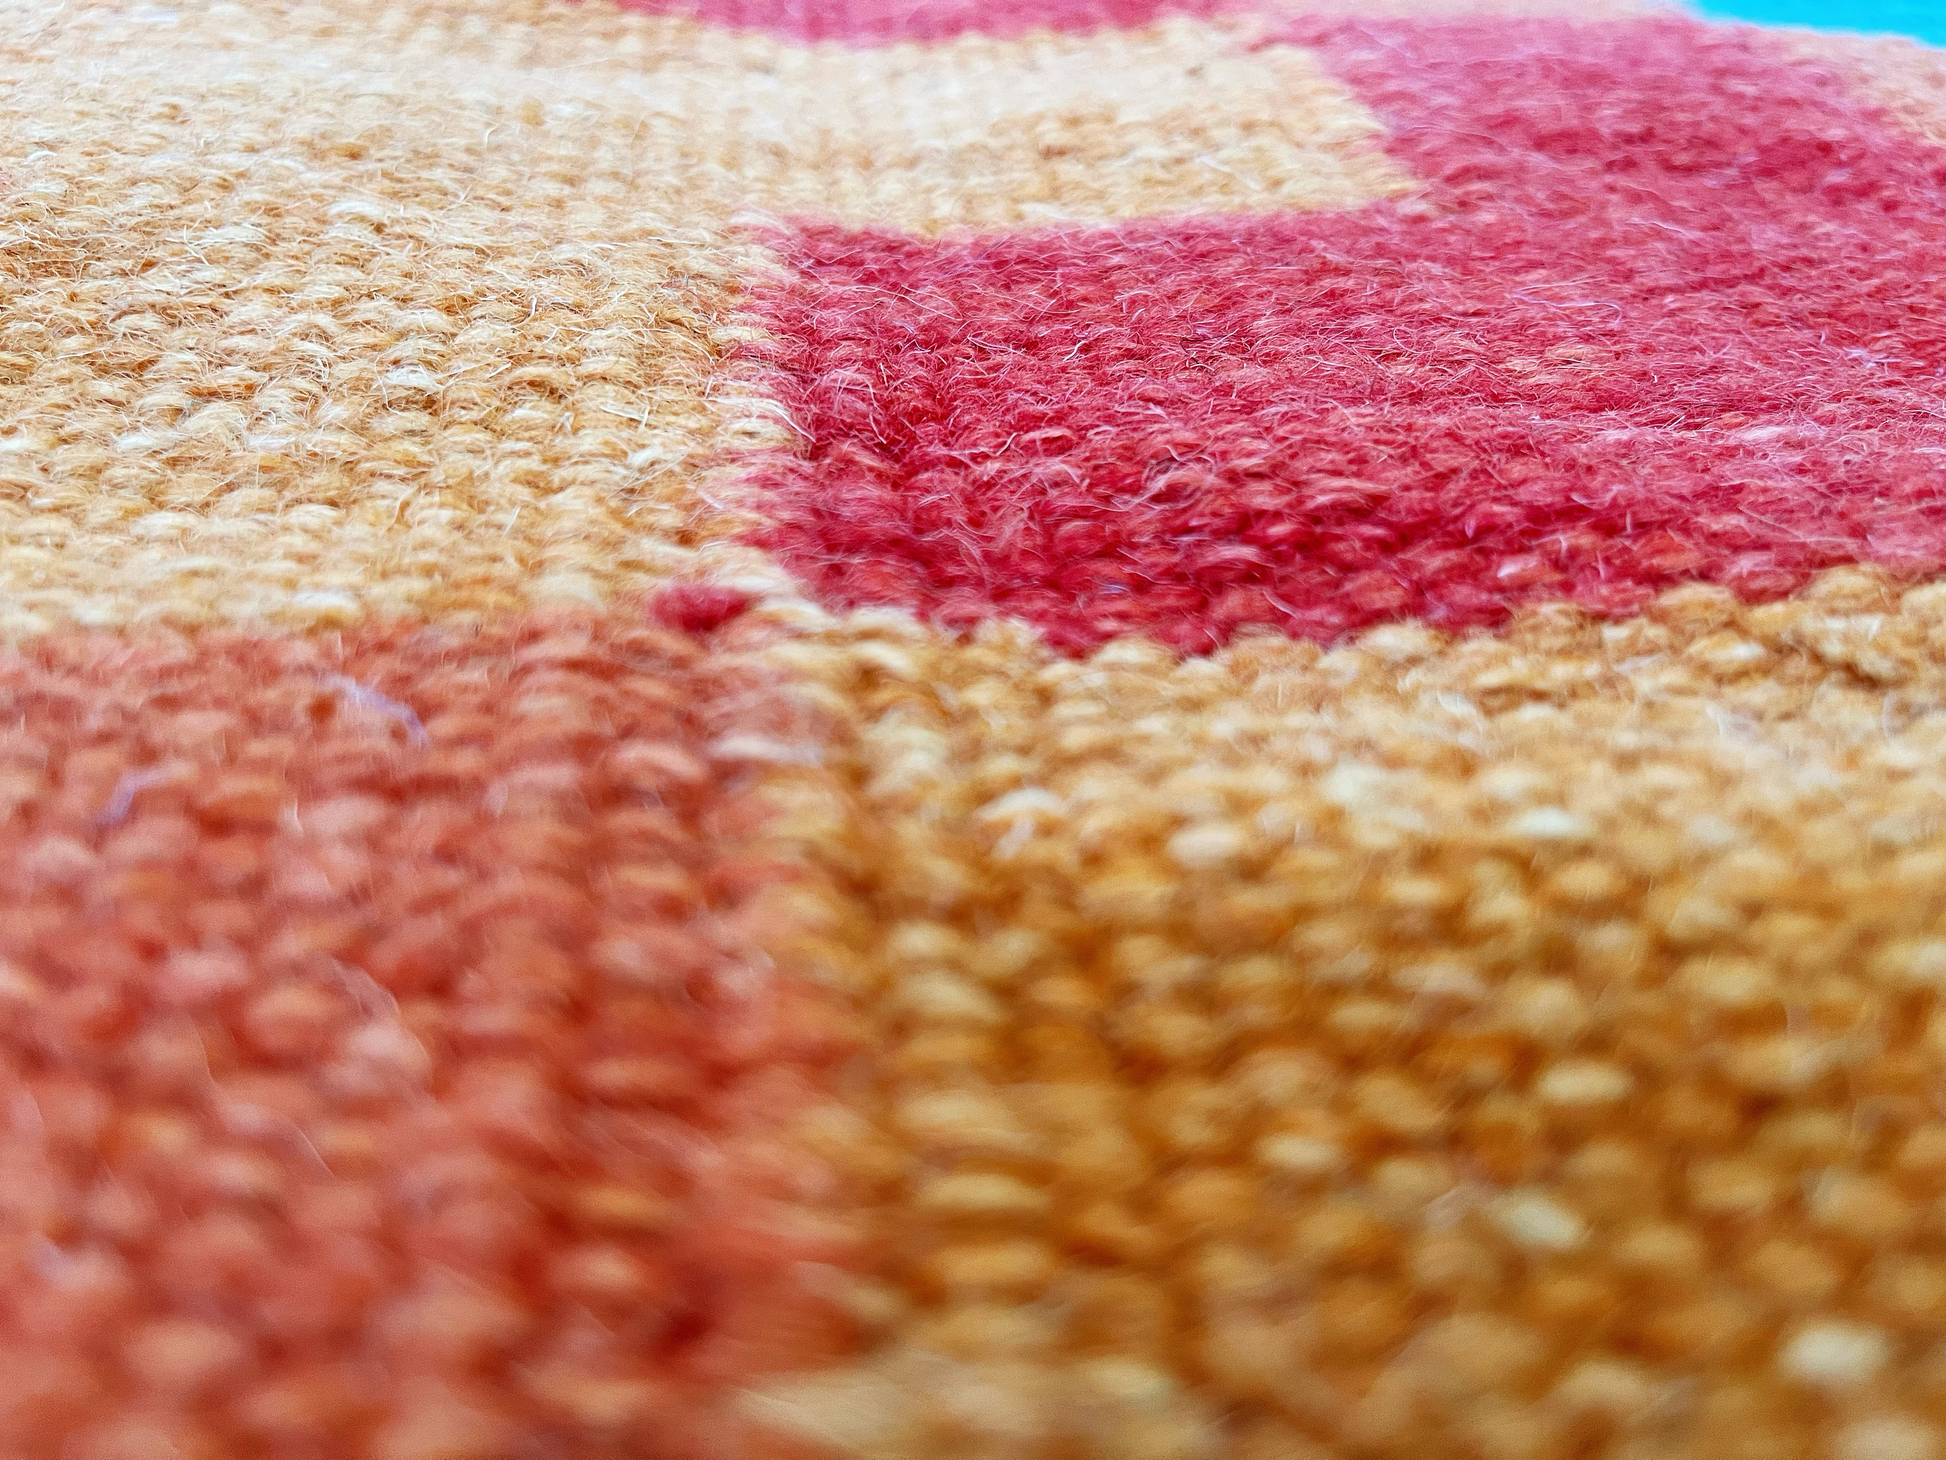 4’ X 6’ Handmade Wool Rug, Multi Colour Pattern Wool Rug, Living Room Rug, Bohemian Décor, Area Rug Luxury Home Décor